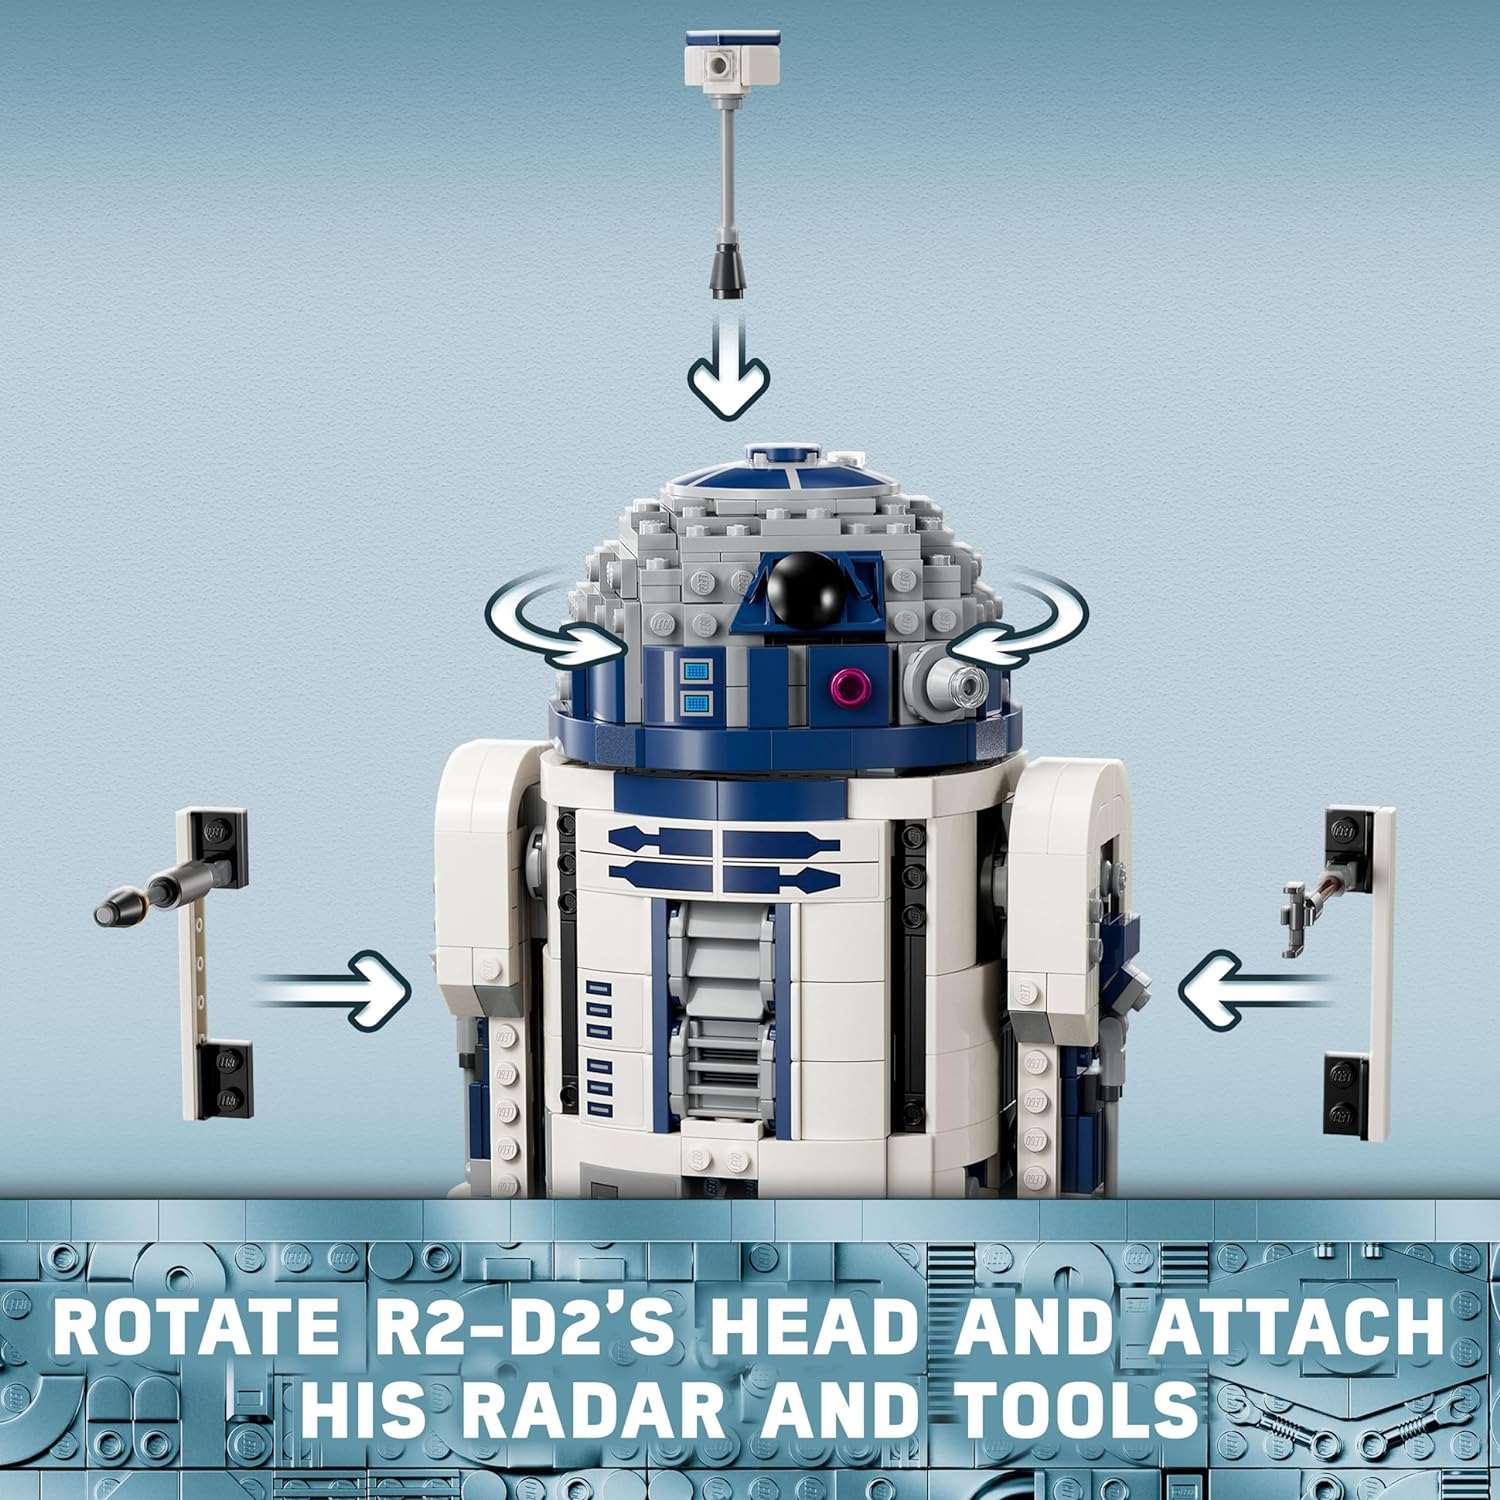 ليجو 75379 ستار وورز R2-D2، شخصية الروبوت المبنية من الطوب، ديكور غرفة ستار وورز القابل للتجميع مع شخصية دارث ملاك الصغيرة الحصرية للذكرى الخامسة والعشرين، هدية لعب إبداعية.